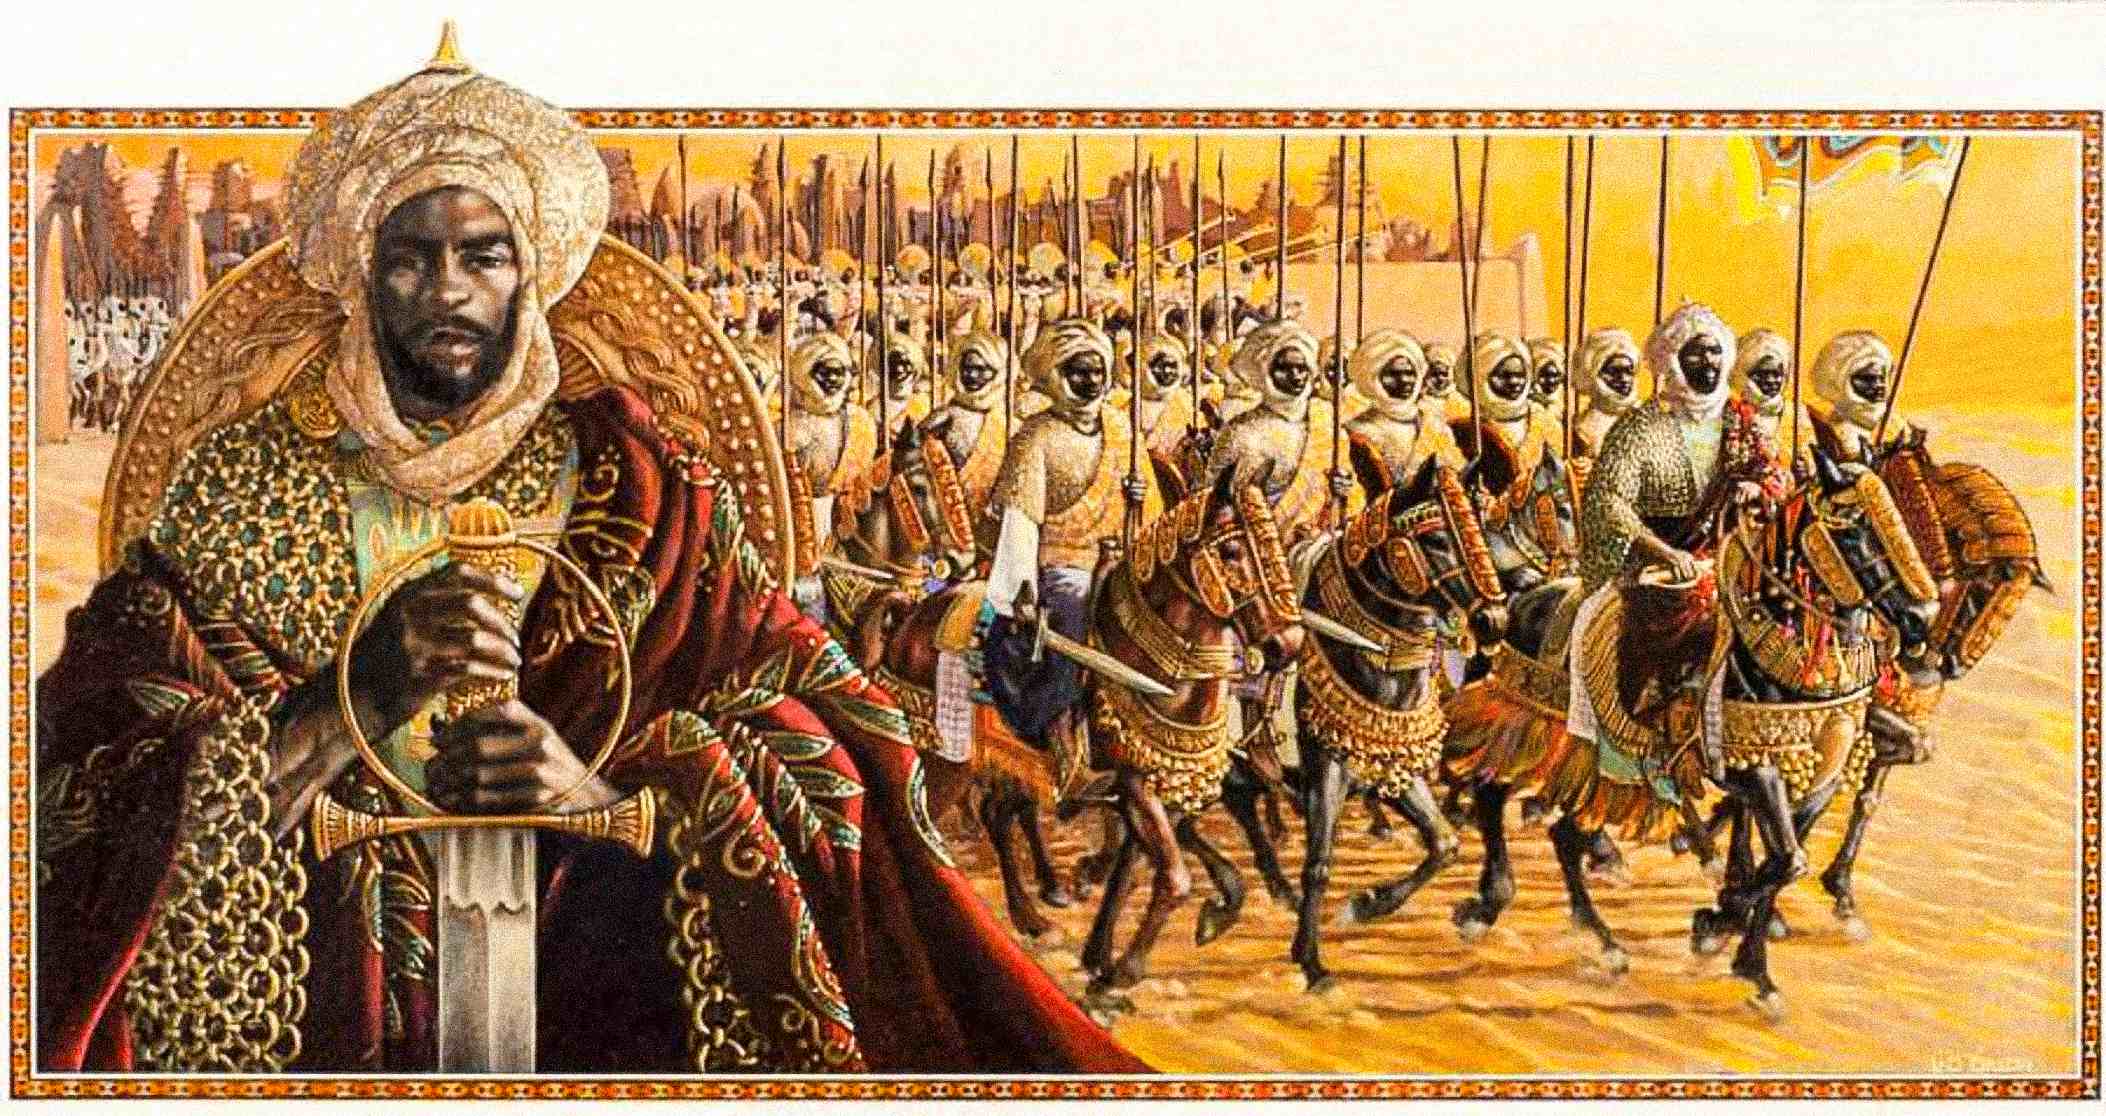 Umjetnički prikaz carstva Mansa Musa